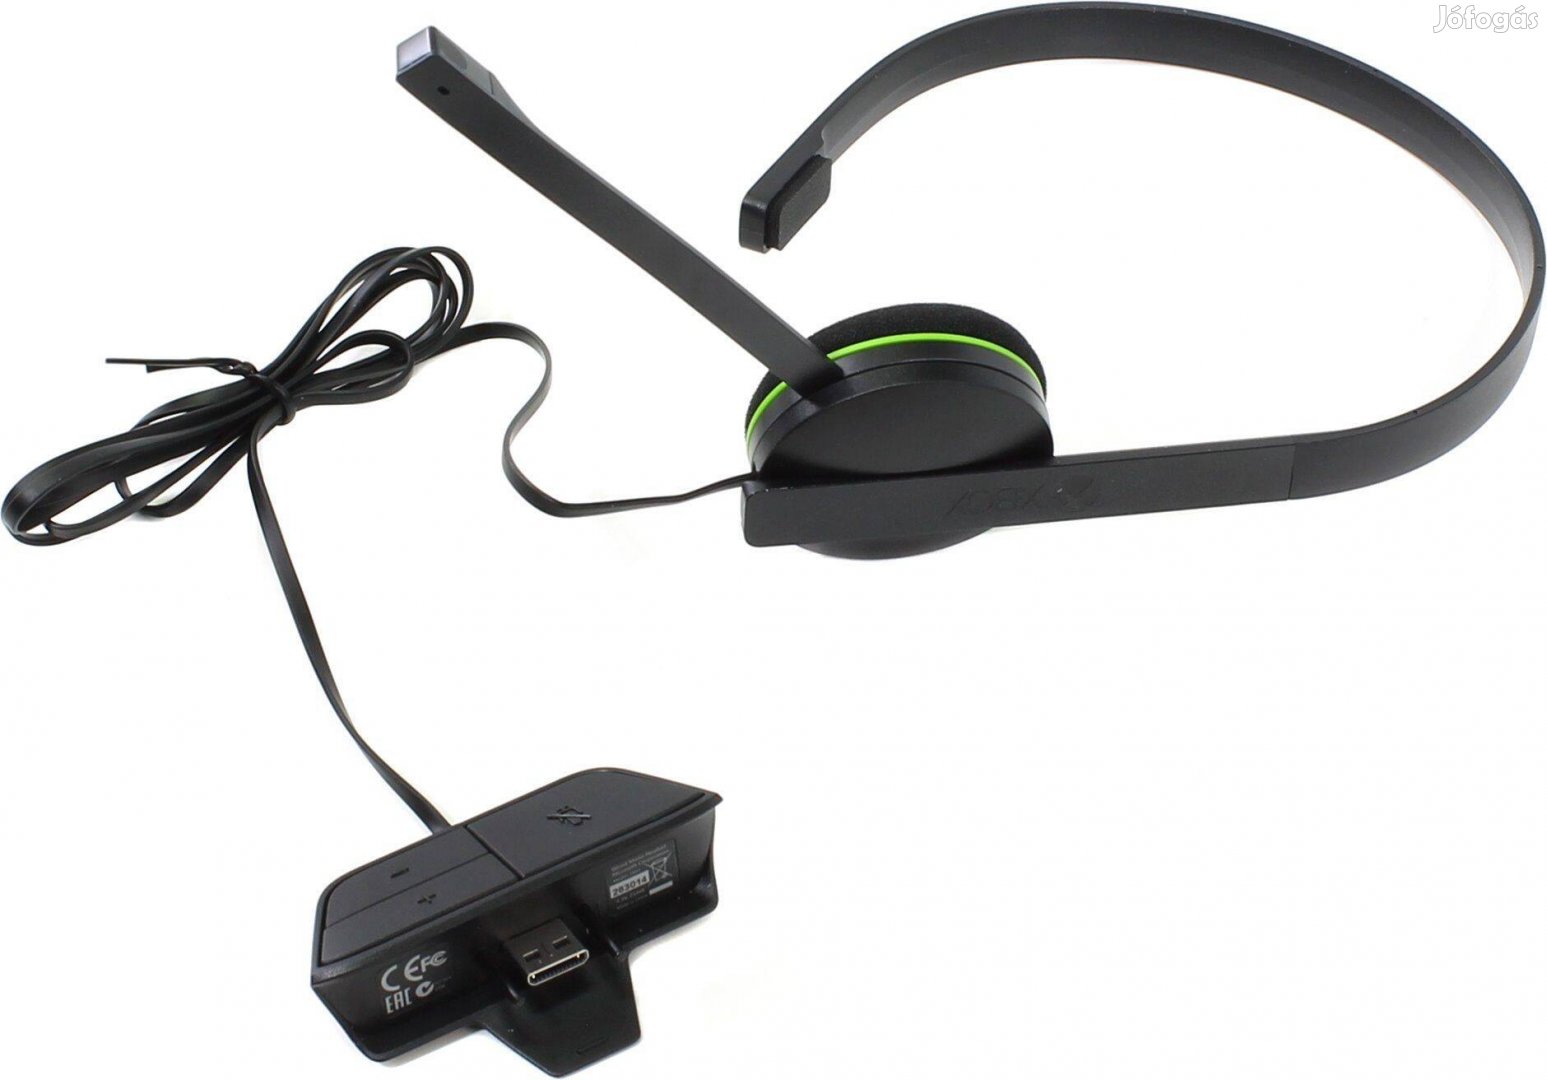 Használt Xbox One chat headset a Playbox Co-tól